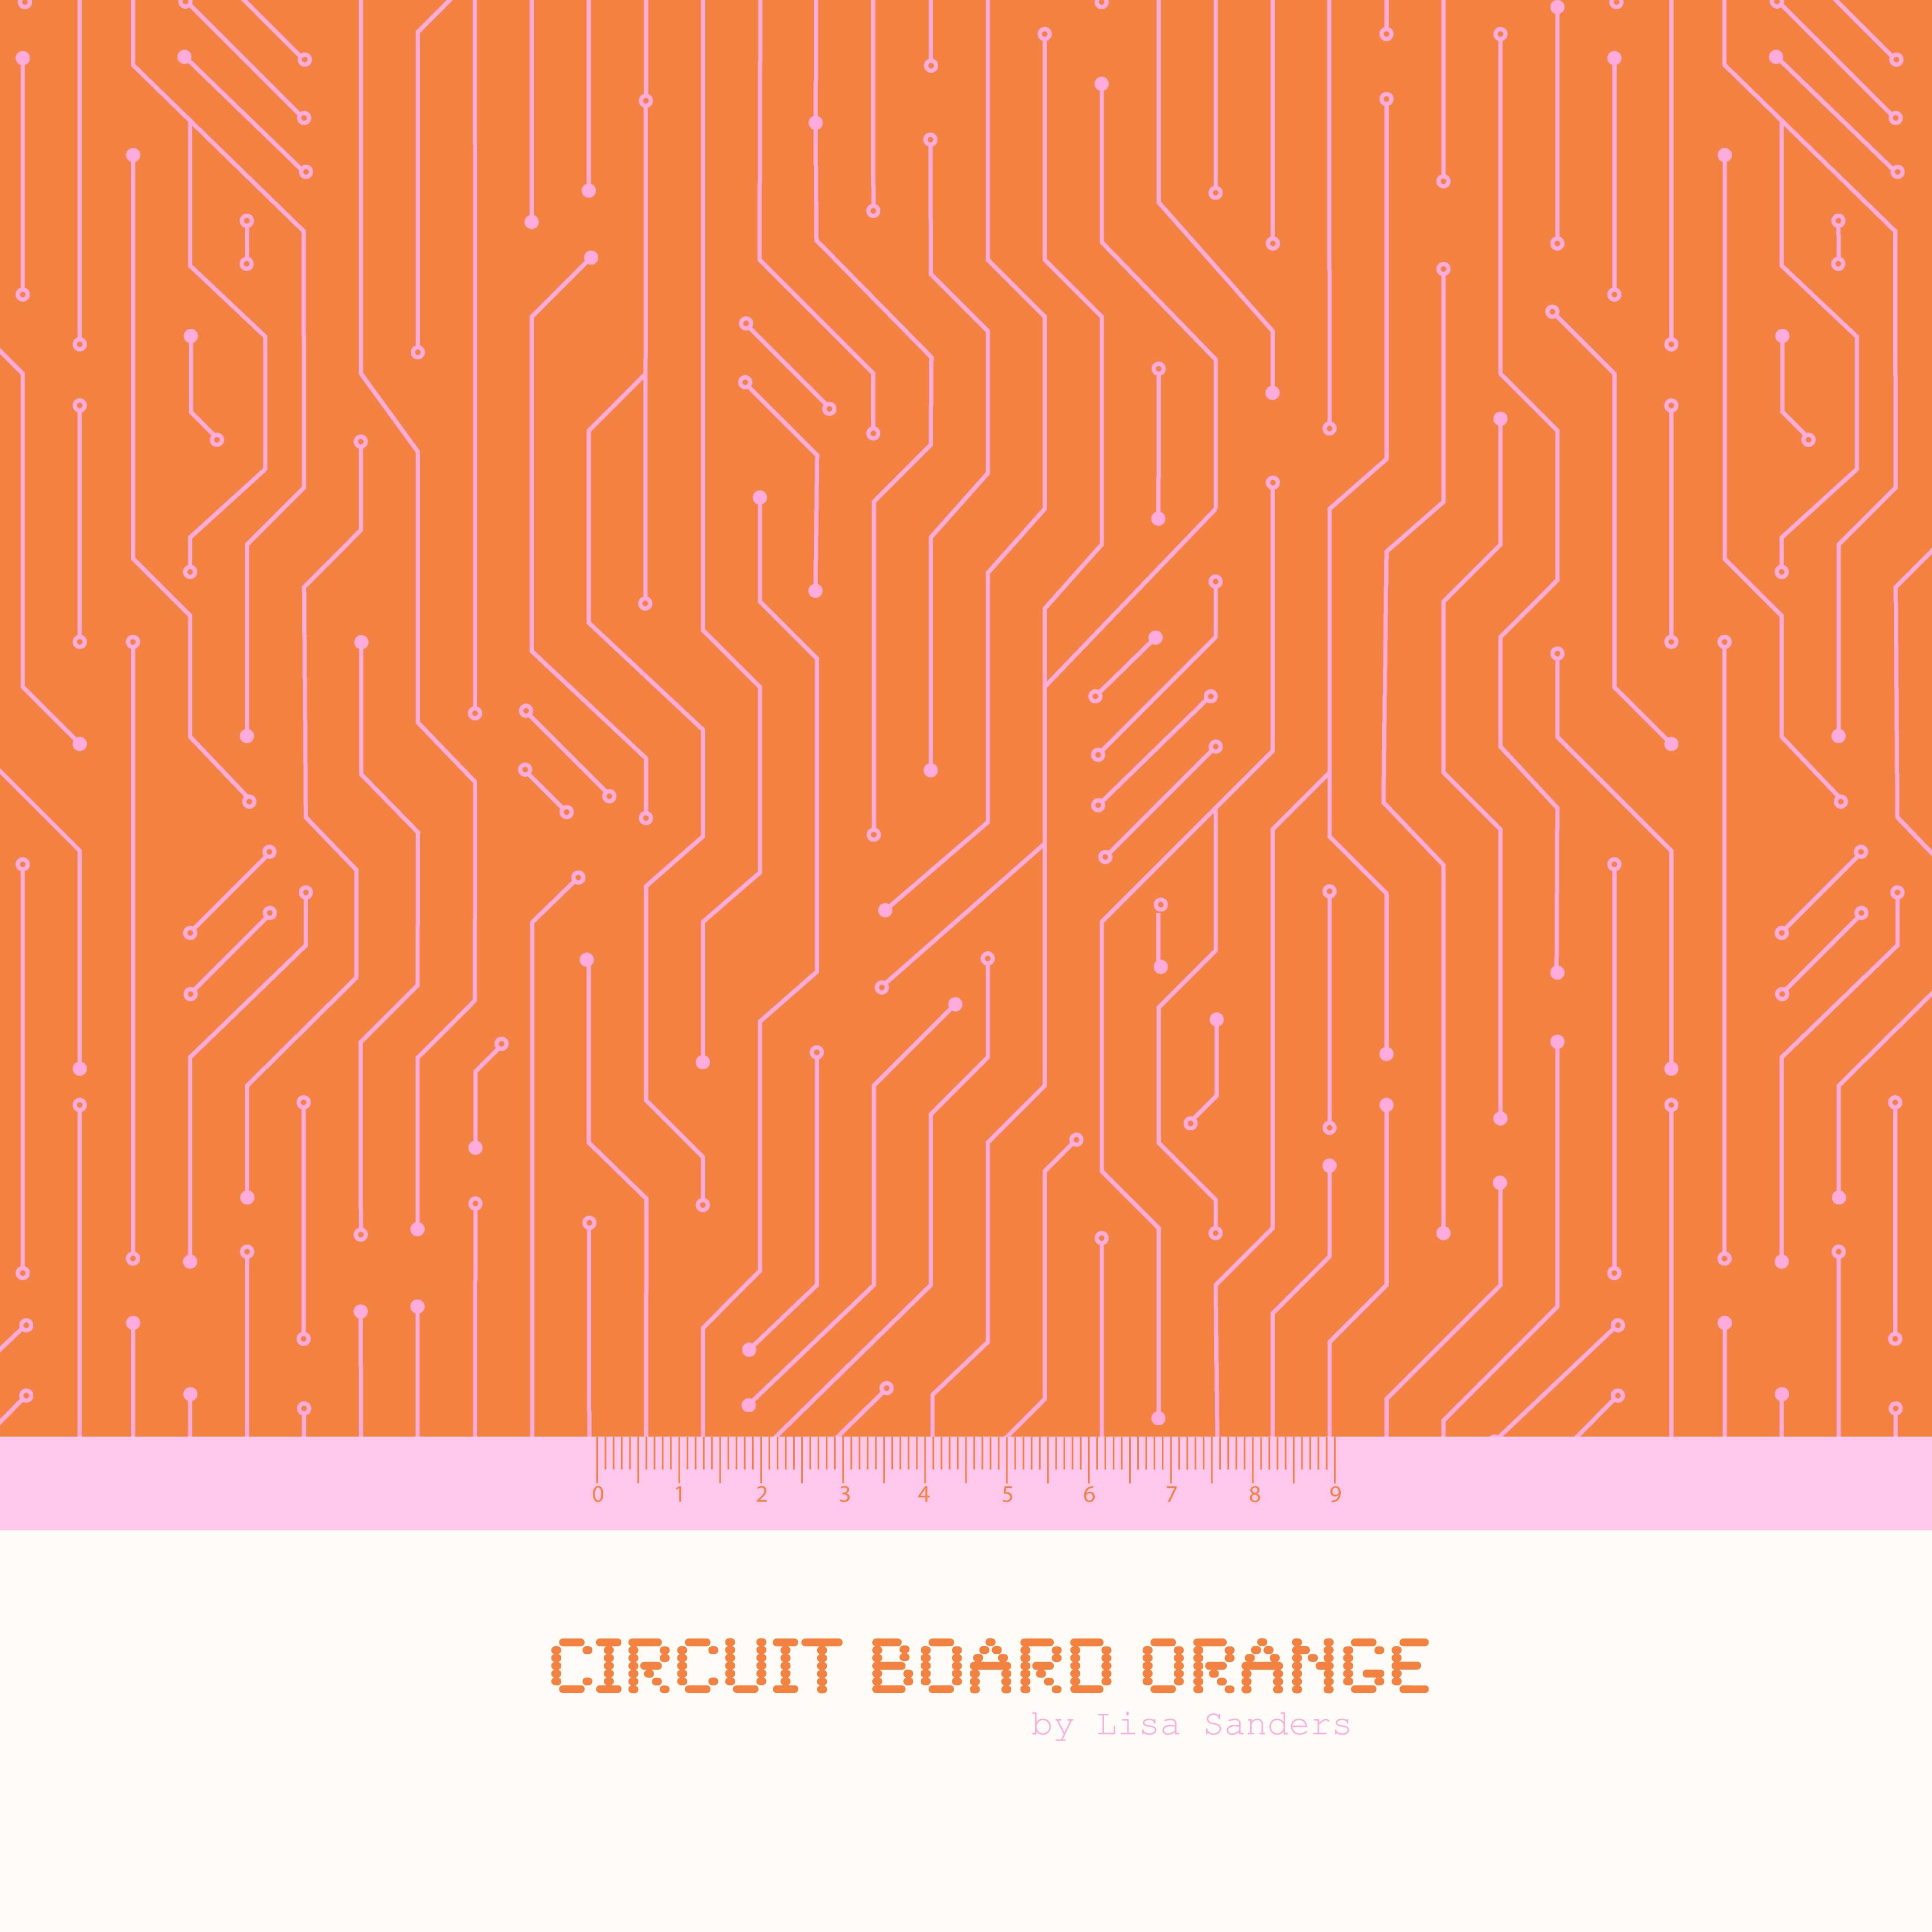 Circuit Board Orange